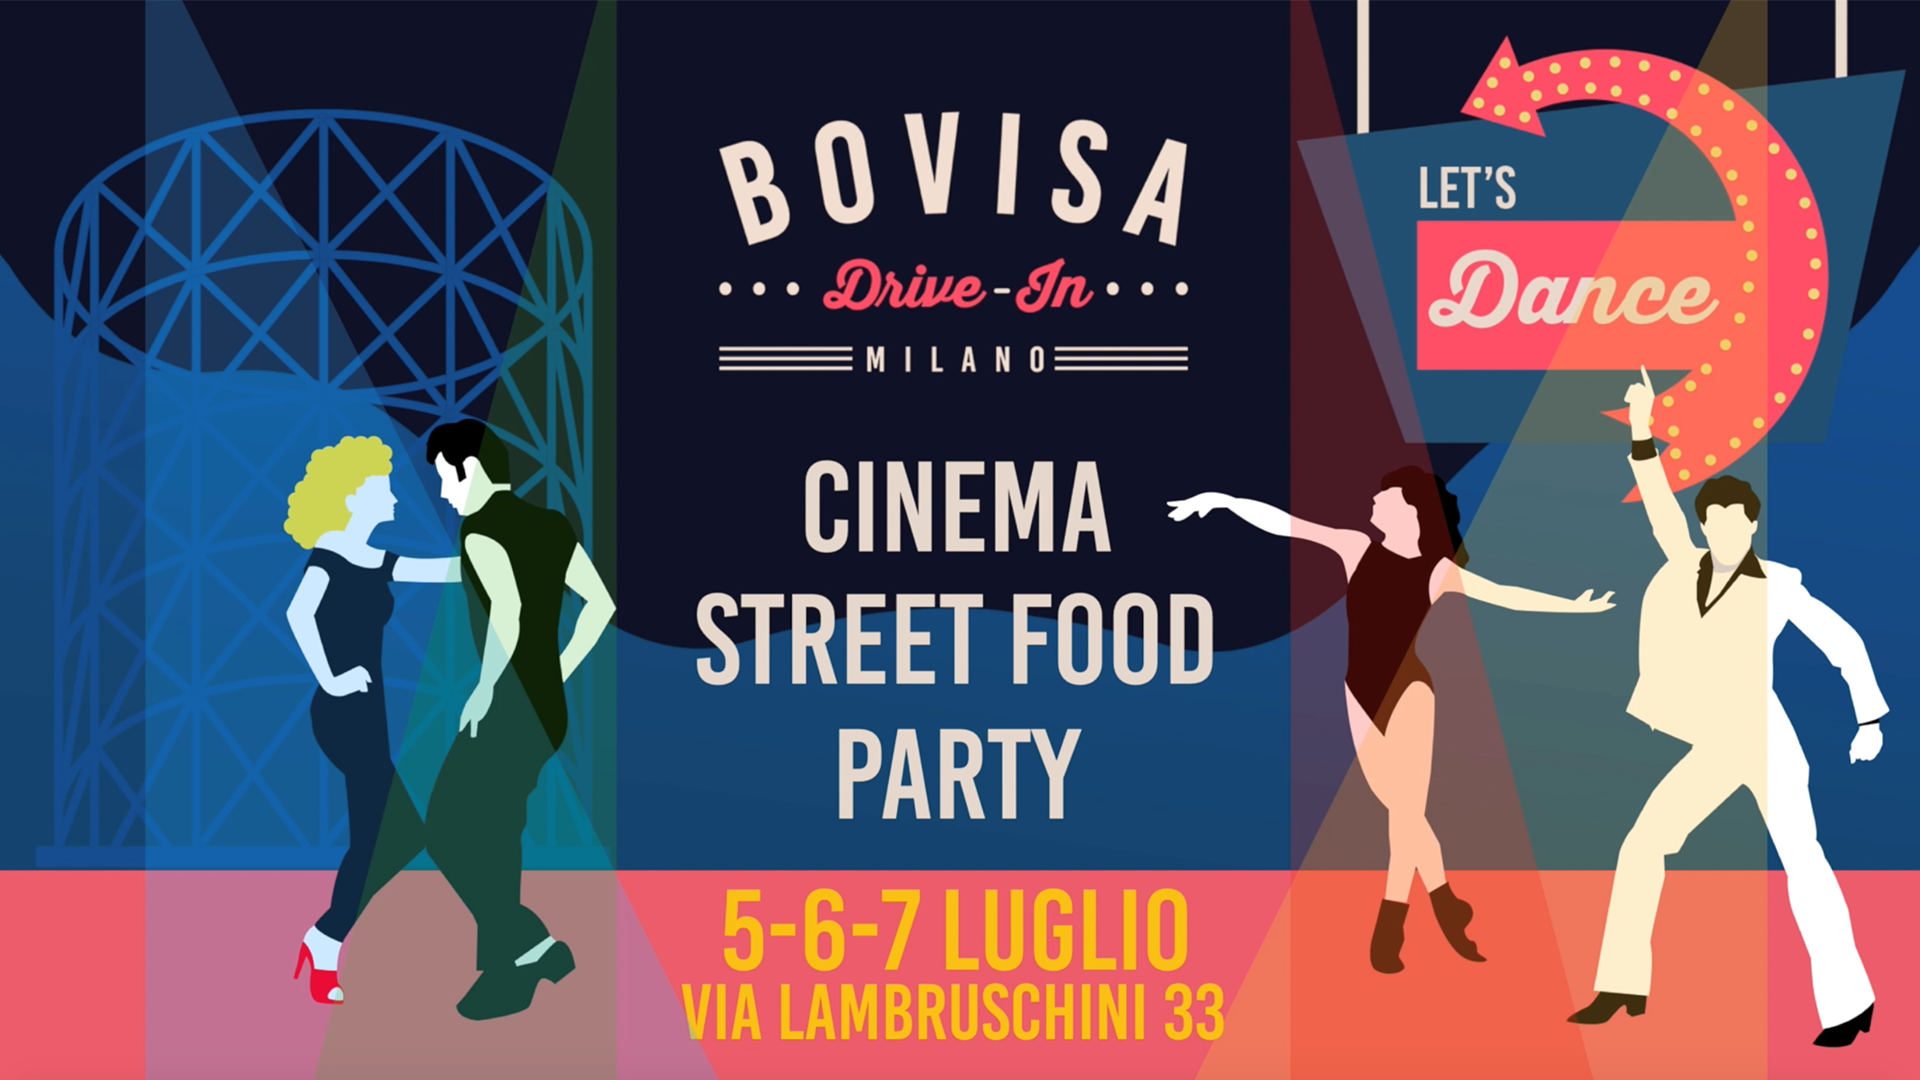 BOVISA DRIVE-IN / Dj Set, Street Food & Cinema / Let's Dance milano